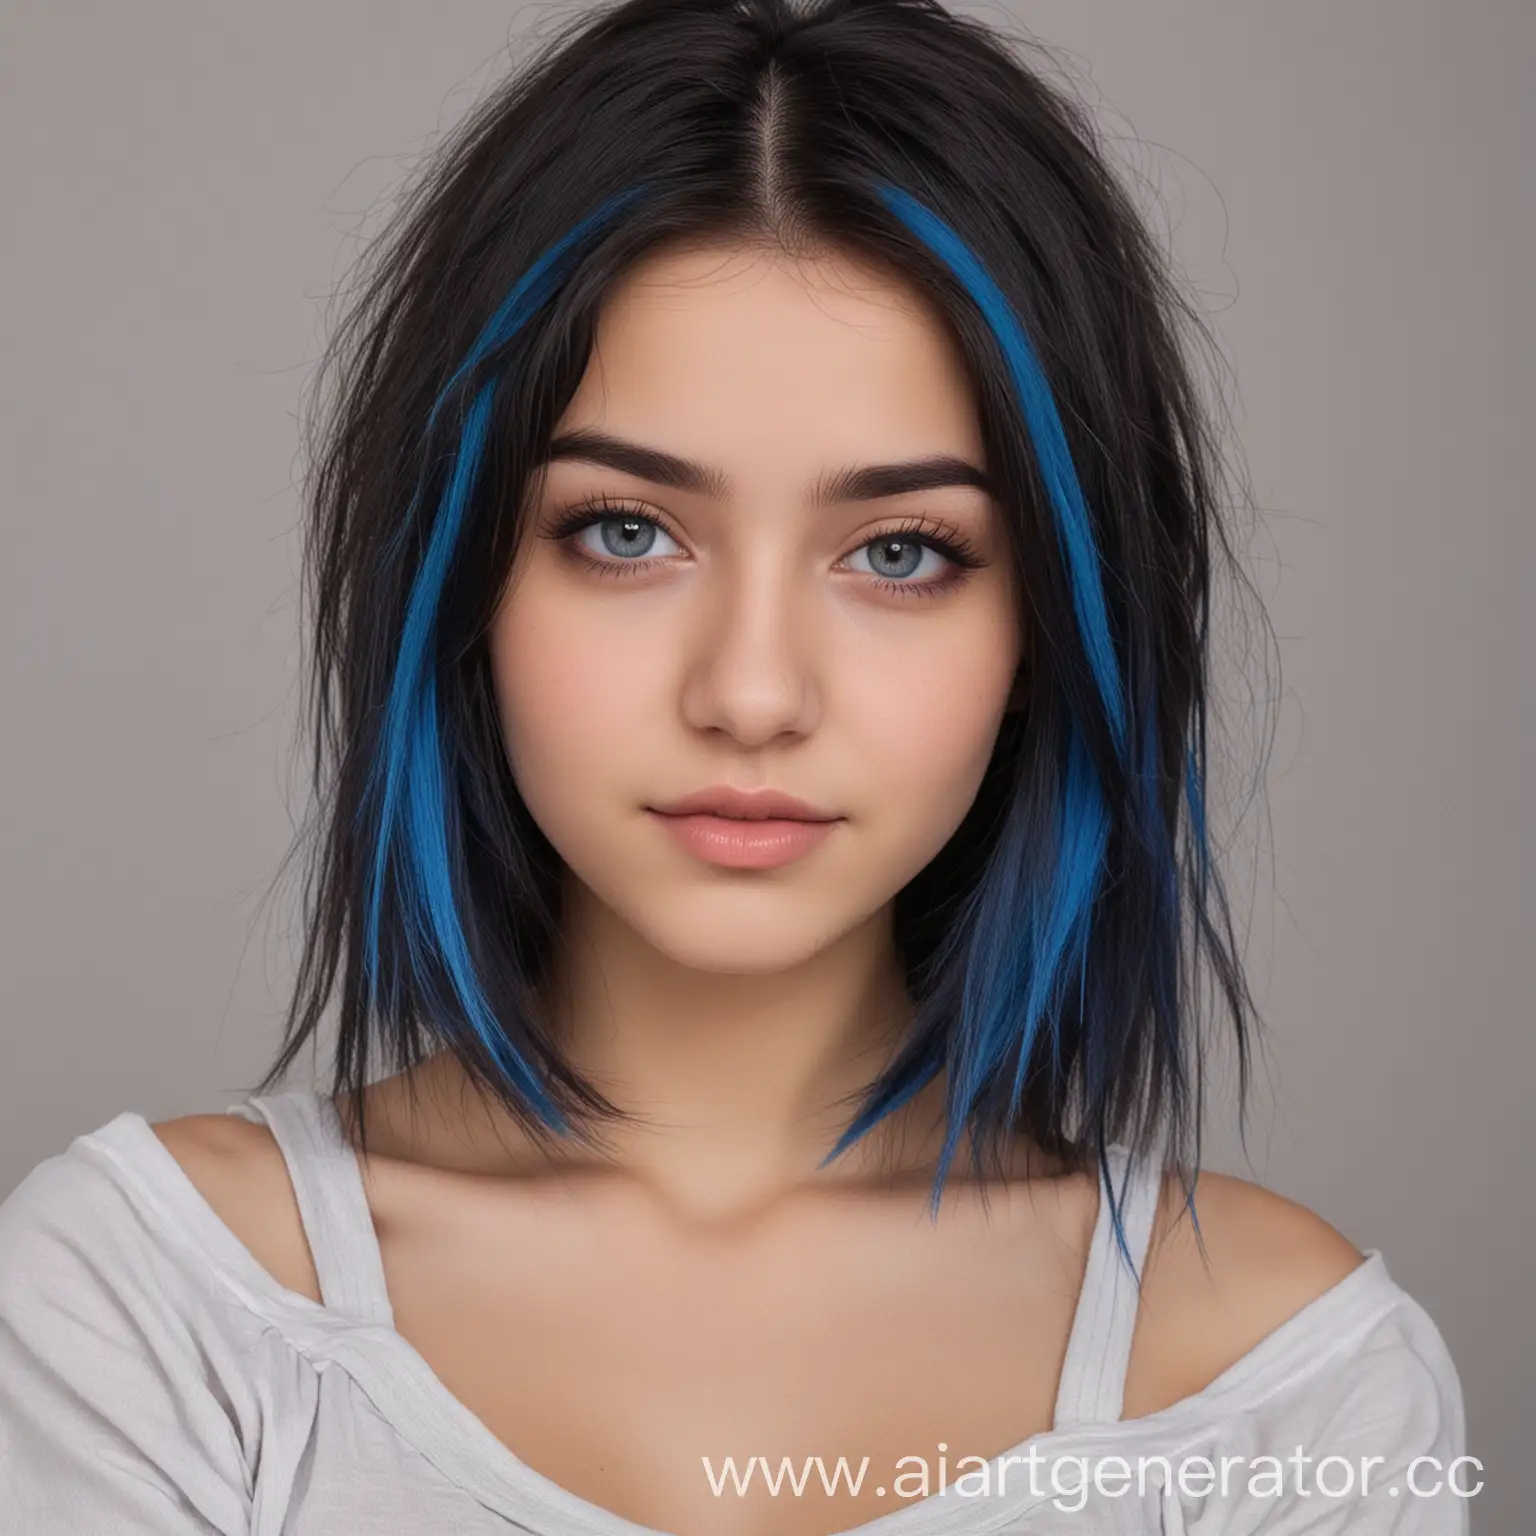 девушка, 17 лет, темные волосы до плеч с челкой, синие пряди волос у виска и в челке